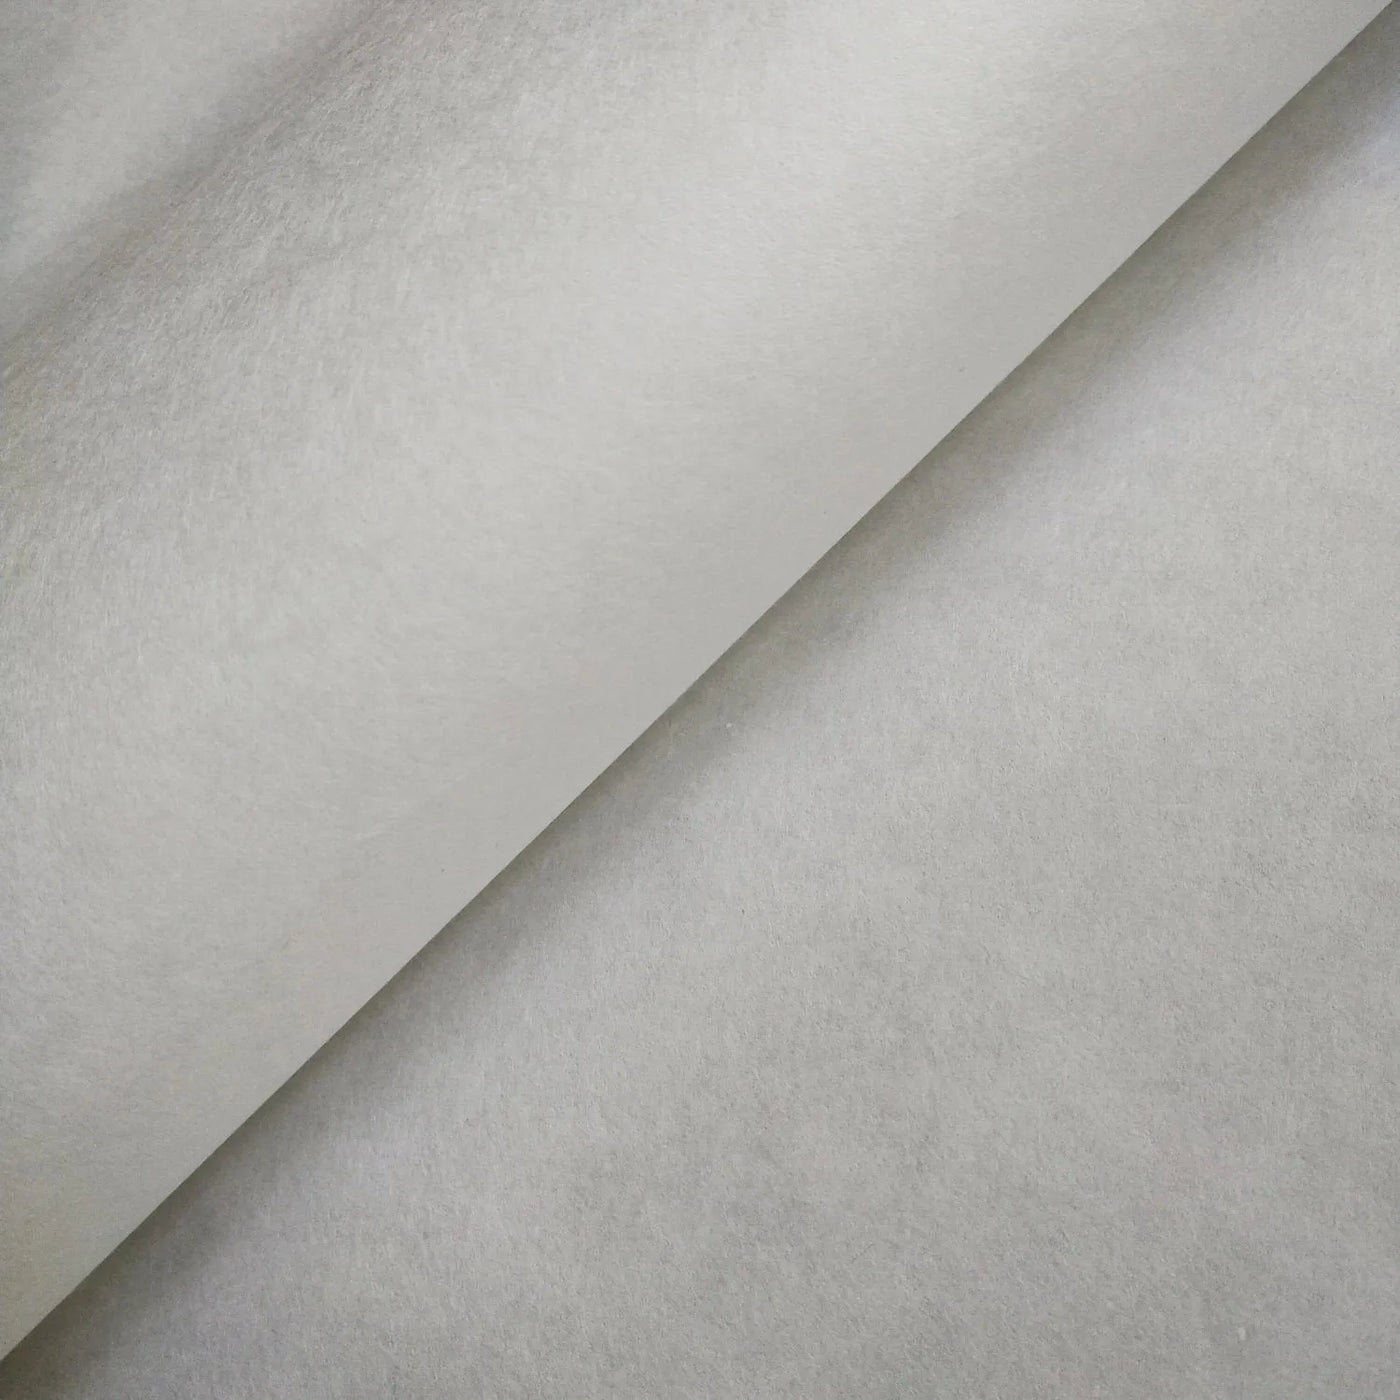 White Kozo Paper (70 gsm, 64x94 cm), Kozo Studio